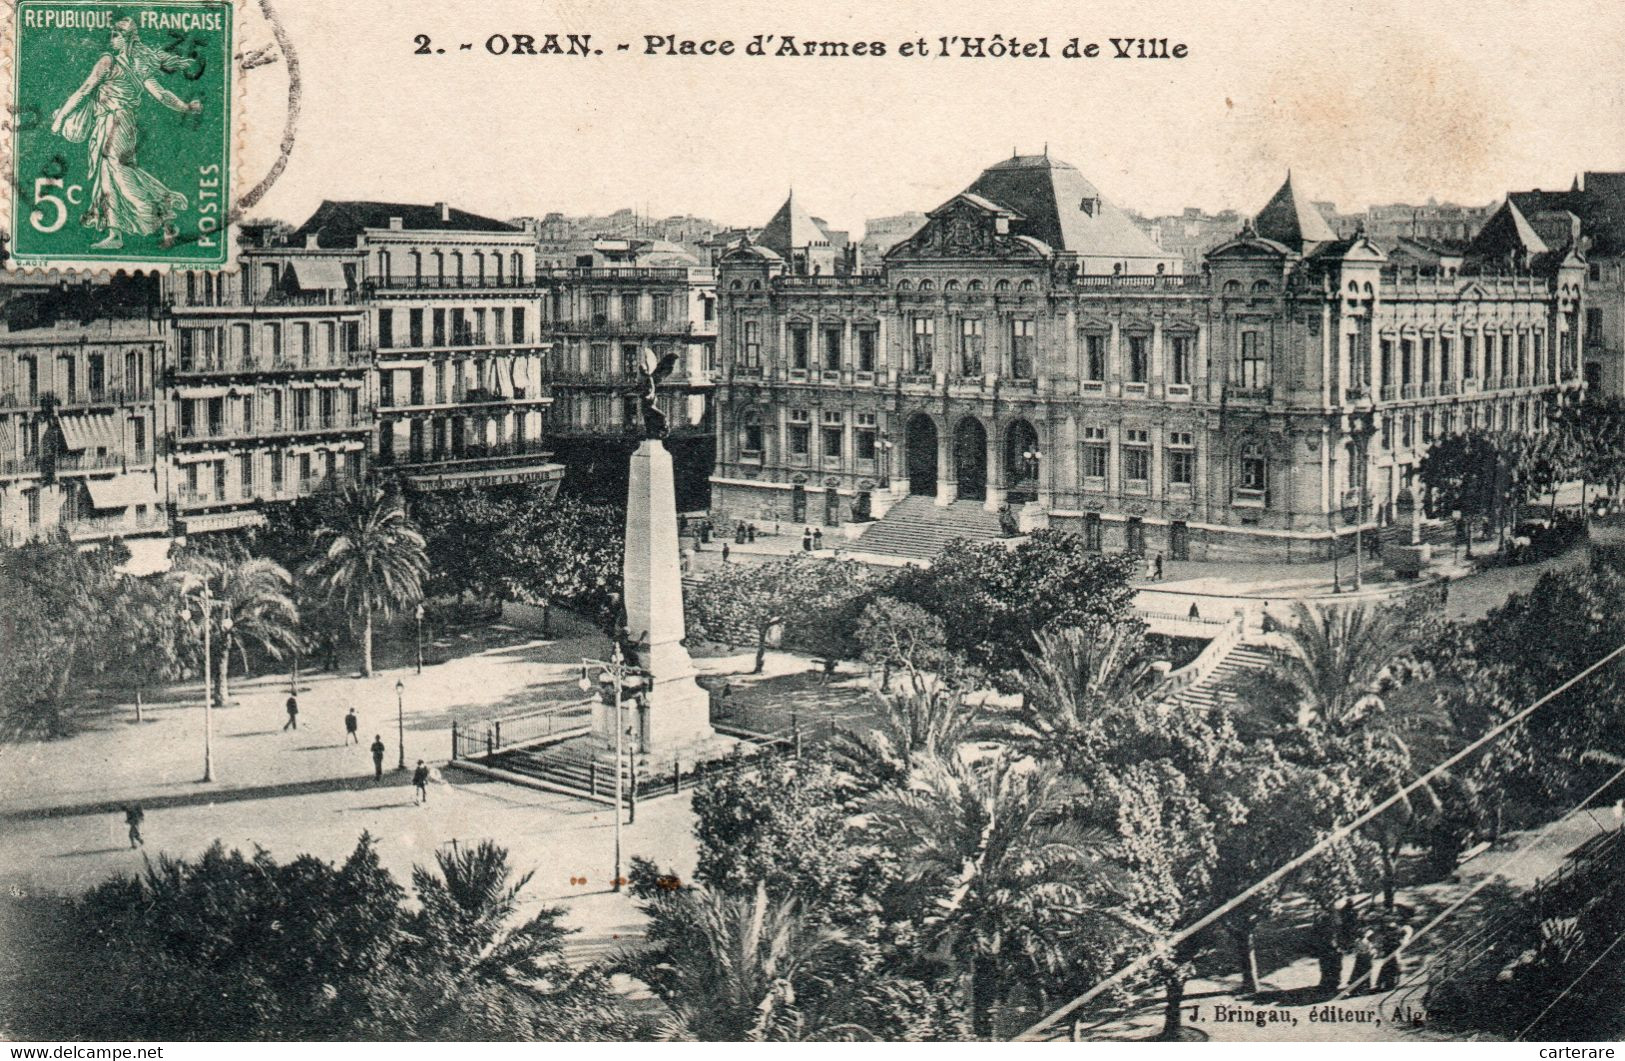 AFRIQUE DU NORD,ALGERIA,ALGERIE,ORAN,ORANIE,1912,RARE - Oran